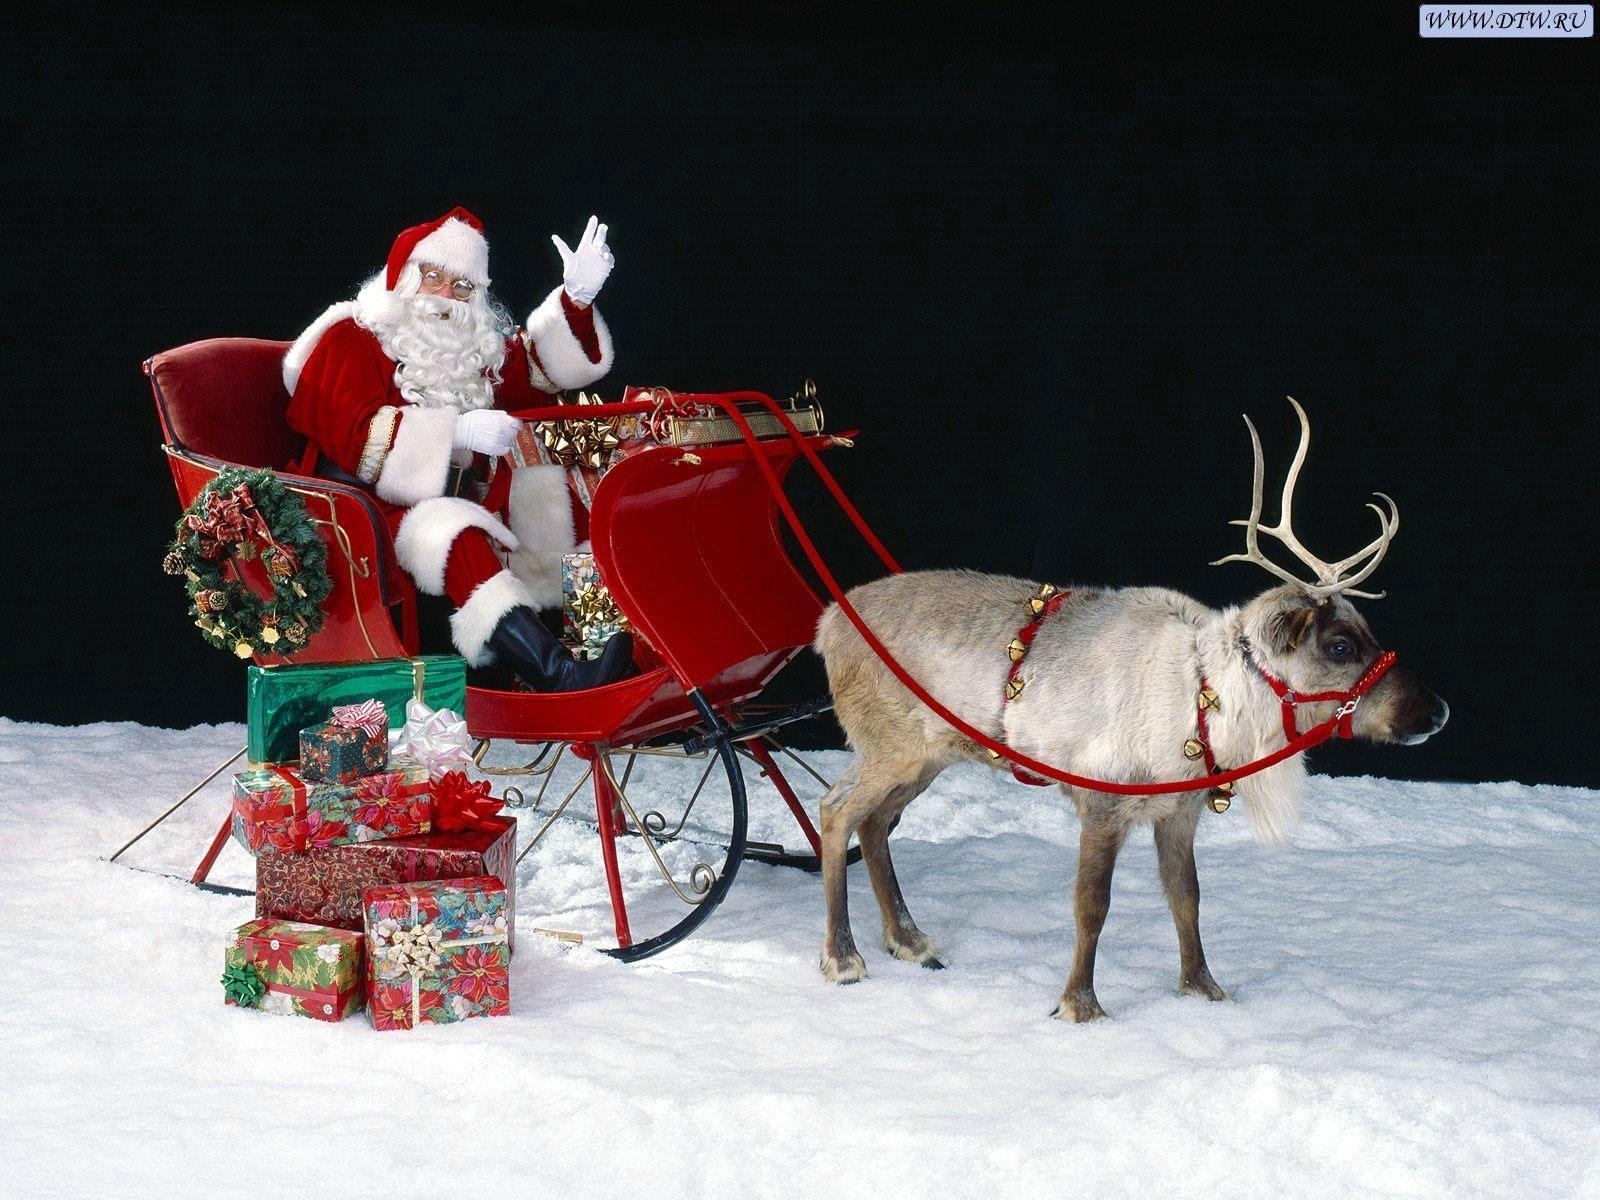 Скачать обои бесплатно Санта Клаус (Santa Claus), Рождество (Christmas Xmas), Праздники, Дед Мороз, Новый Год (New Year) картинка на рабочий стол ПК